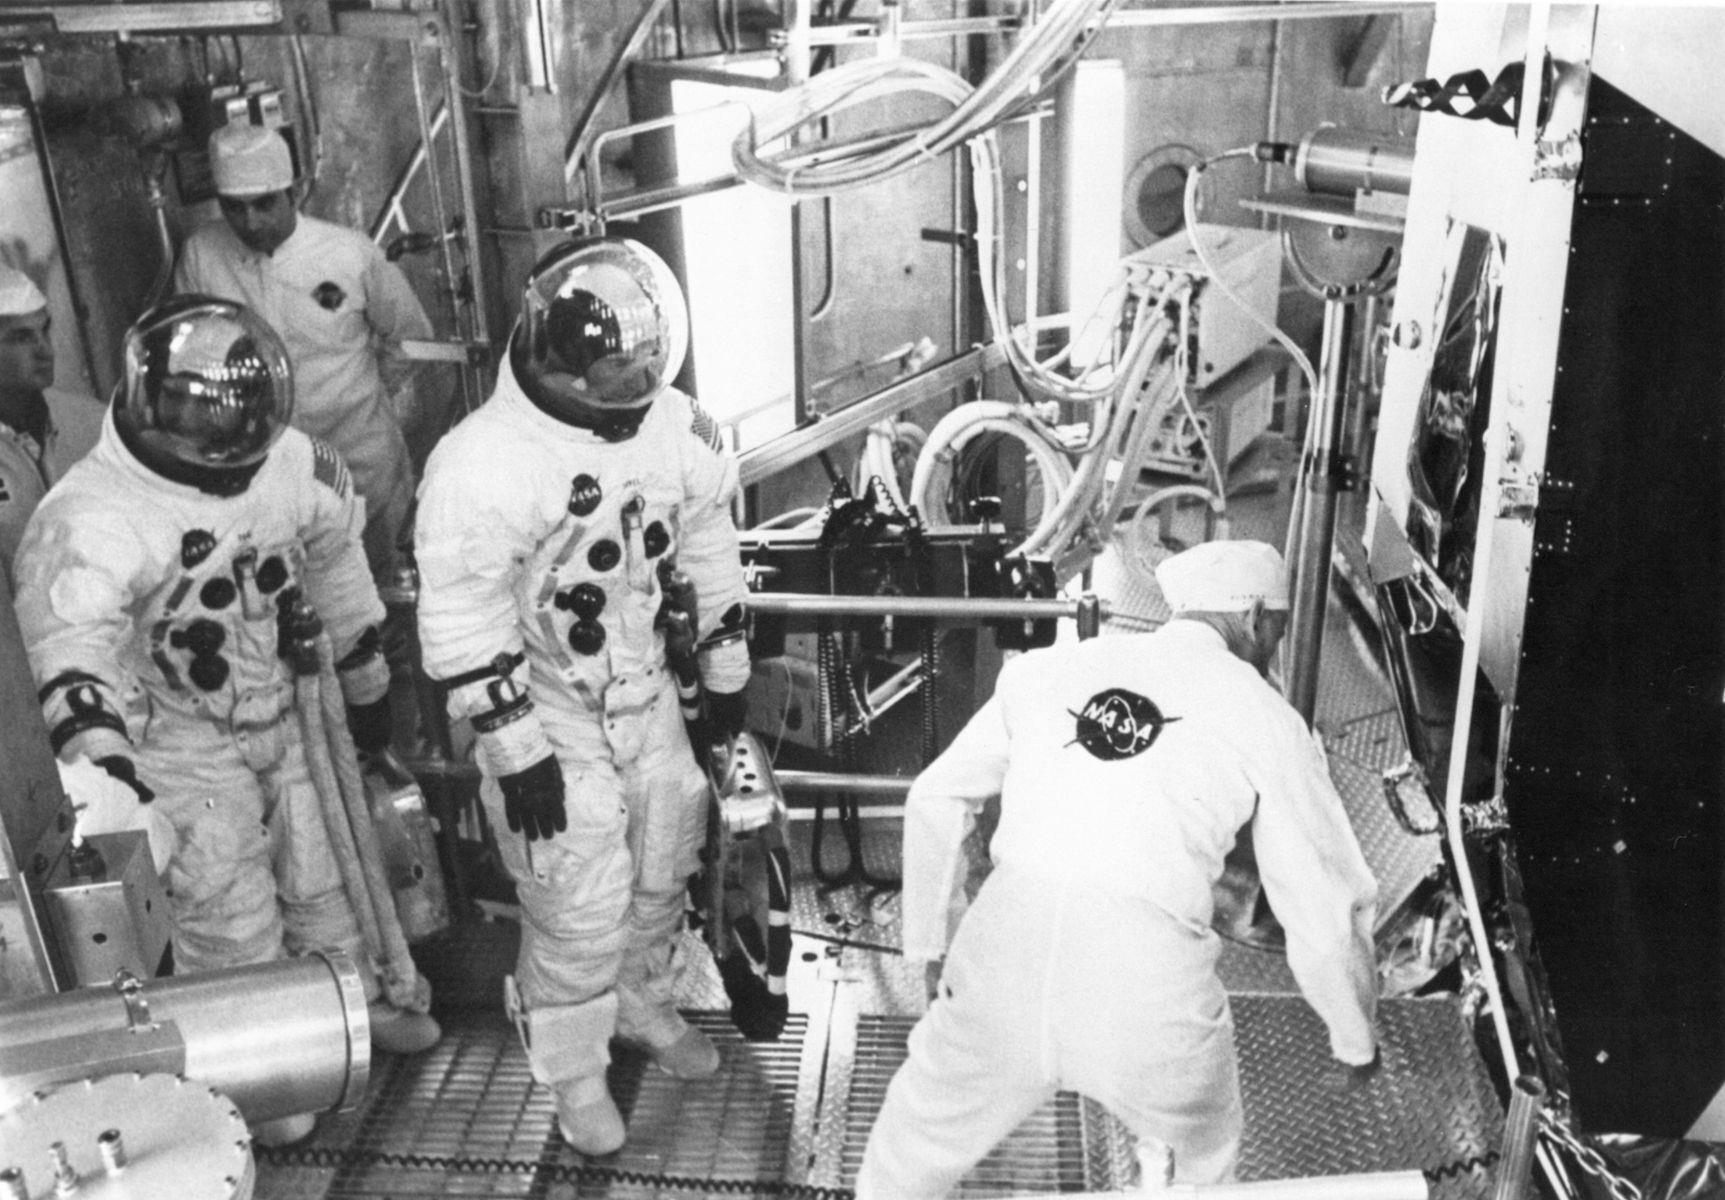 Que se serait-il passé si Neil Armstrong était tombé malade avant la date de lancement, ou si Buzz Aldrin avait eu un accident? Personne ne sera étonné d’apprendre que <a href="https://apollo11space.com/apollo-11-backup-crew-and-support-crew/" rel="noreferrer noopener">la NASA prévoit systématiquement des astronautes remplaçants</a> formés et prêts à prendre le relais, de sorte que les missions importantes et coûteuses risquent moins d’être reportées ou annulées. Les équipages de réserve se voient généralement offrir la possibilité de commander de futures missions, comme ce fut le cas pour le pilote de réserve du module lunaire d’Apollo 11, Fred Haise Jr., et le commandant James Lovell, photographiés ici en train de s’entraîner pour un test d’altitude en mars 1969. Ils ont ensuite fait partie de l’équipage de la <a href="https://www.lequipe.fr/explore/lf34-les-conquerants-12-hommes-sur-la-lune/" rel="noreferrer noopener">mission Apollo 13</a>, mais n’ont pas eu l’occasion de marcher sur la Lune, car une explosion dans l’espace a détruit leur module de service et a failli les empêcher de revenir sur Terre.